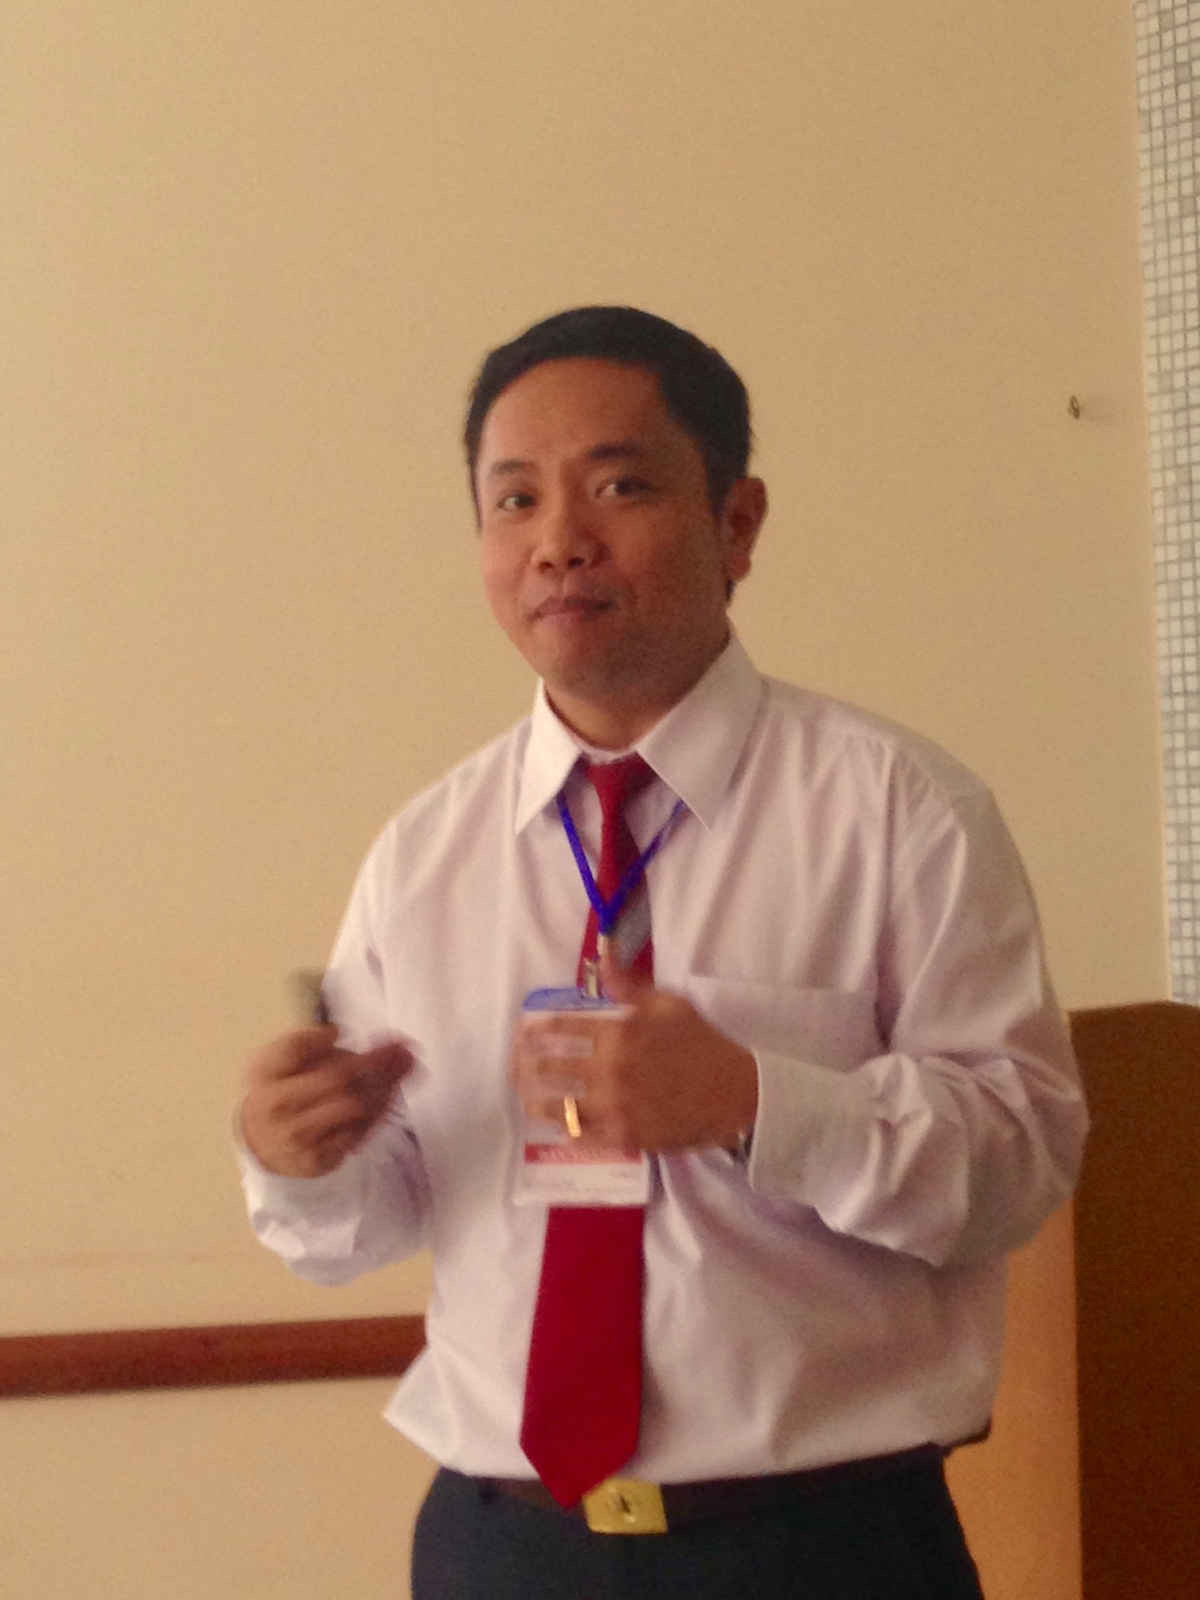    PGS.TS Phan Trung Hiền, thuyết trình tại Hội nghị khoa học.